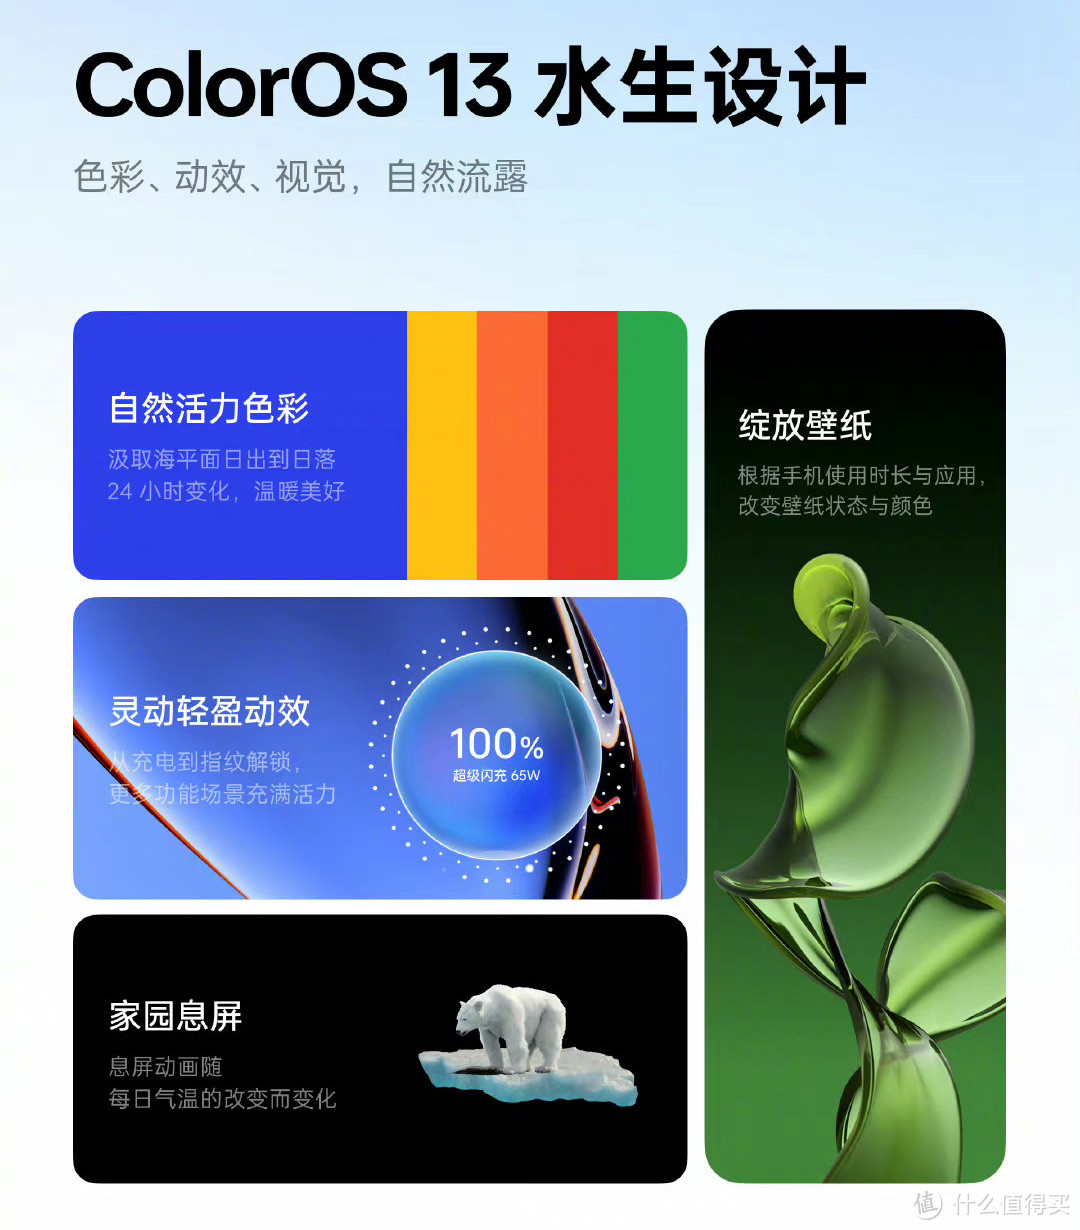 基于安卓13！ColorOS 13正式发布：升级名单公布，骁龙865旗舰在内